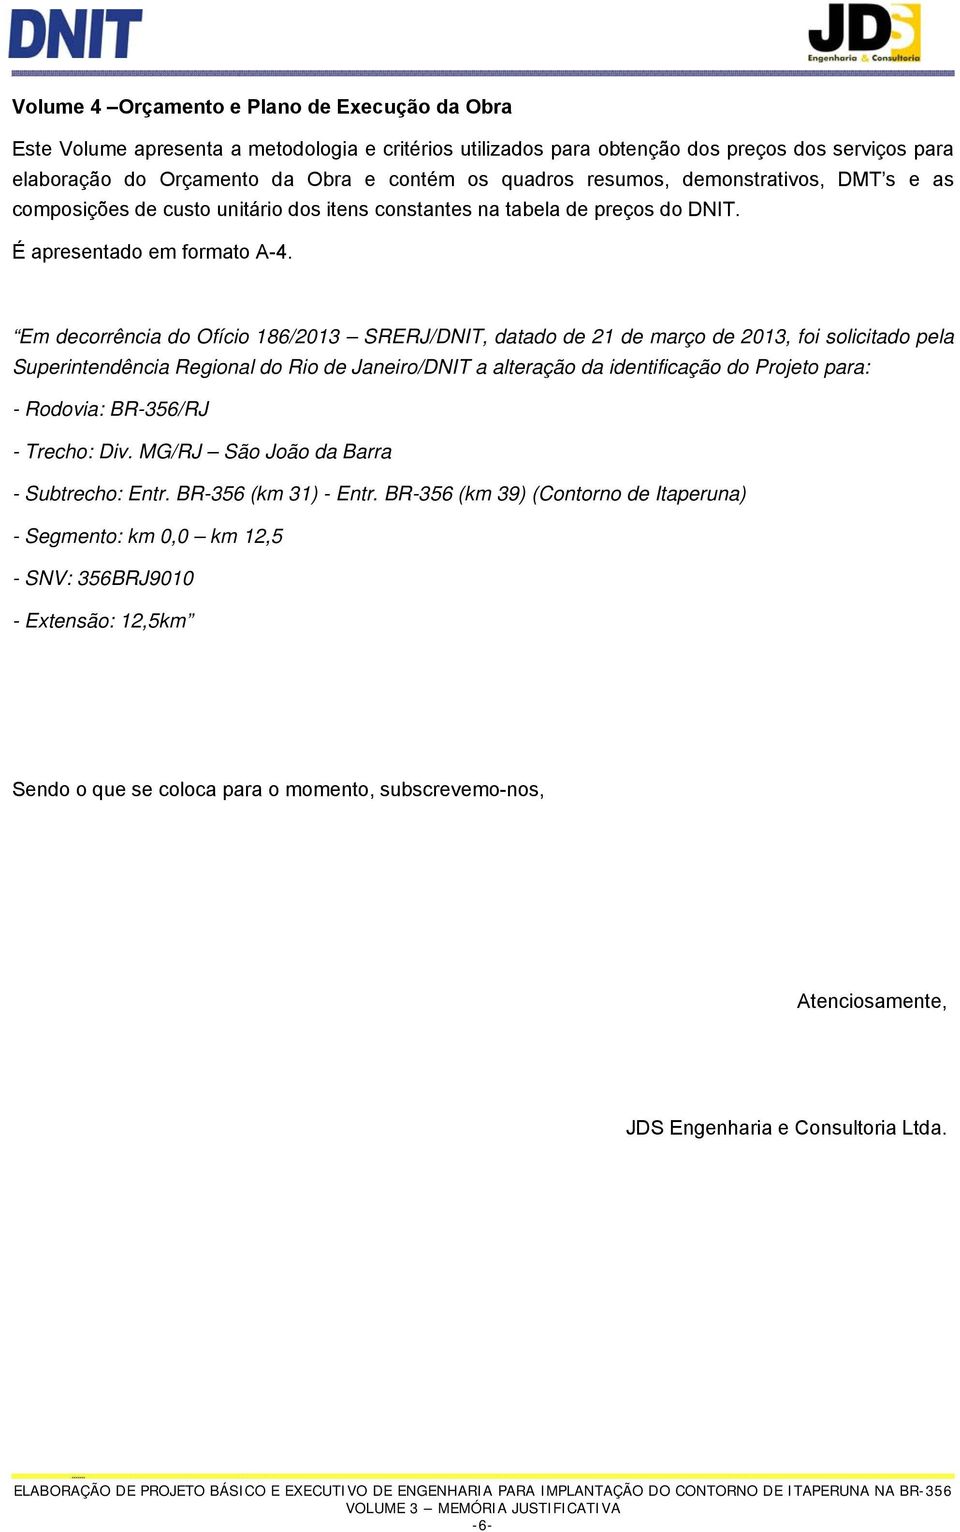 Em decorrência do Ofício 186/2013 SRERJ/DNIT, datado de 21 de março de 2013, foi solicitado pela Superintendência Regional do Rio de Janeiro/DNIT a alteração da identificação do Projeto para: -